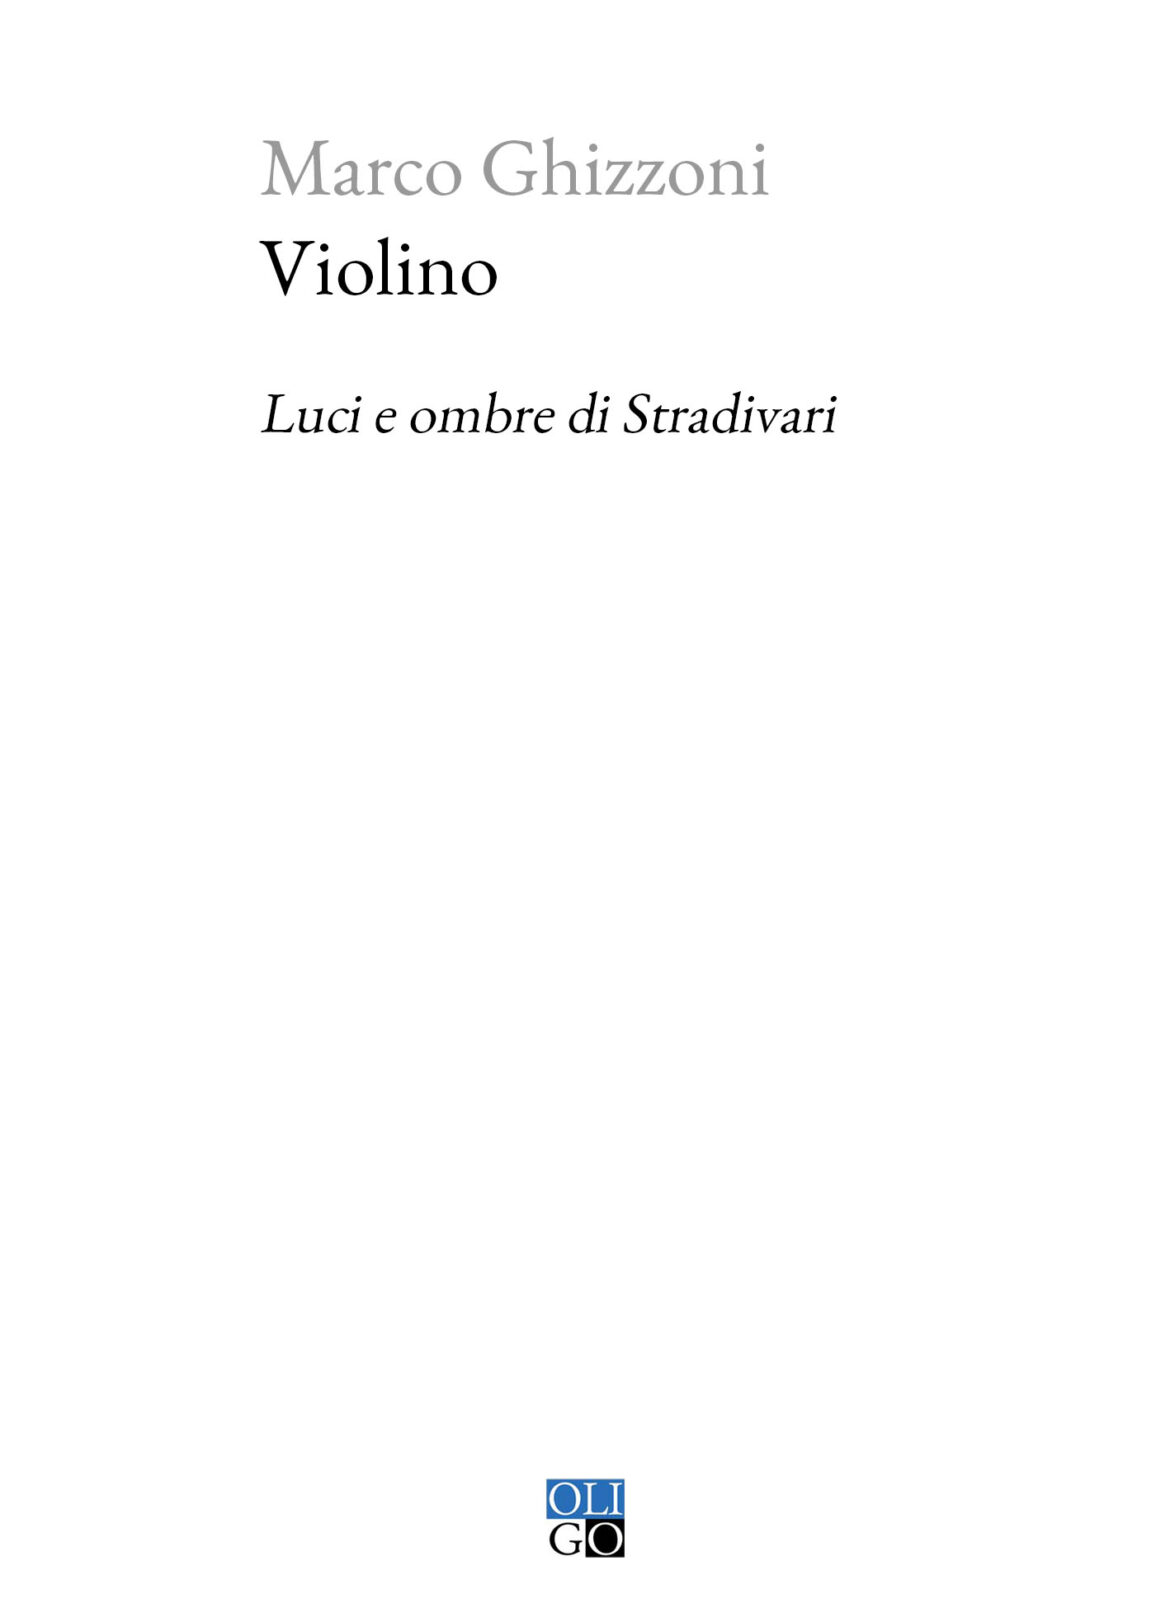 Violino, Luci E Ombre Di Stradivari di Marco Ghizzoni – Recensione